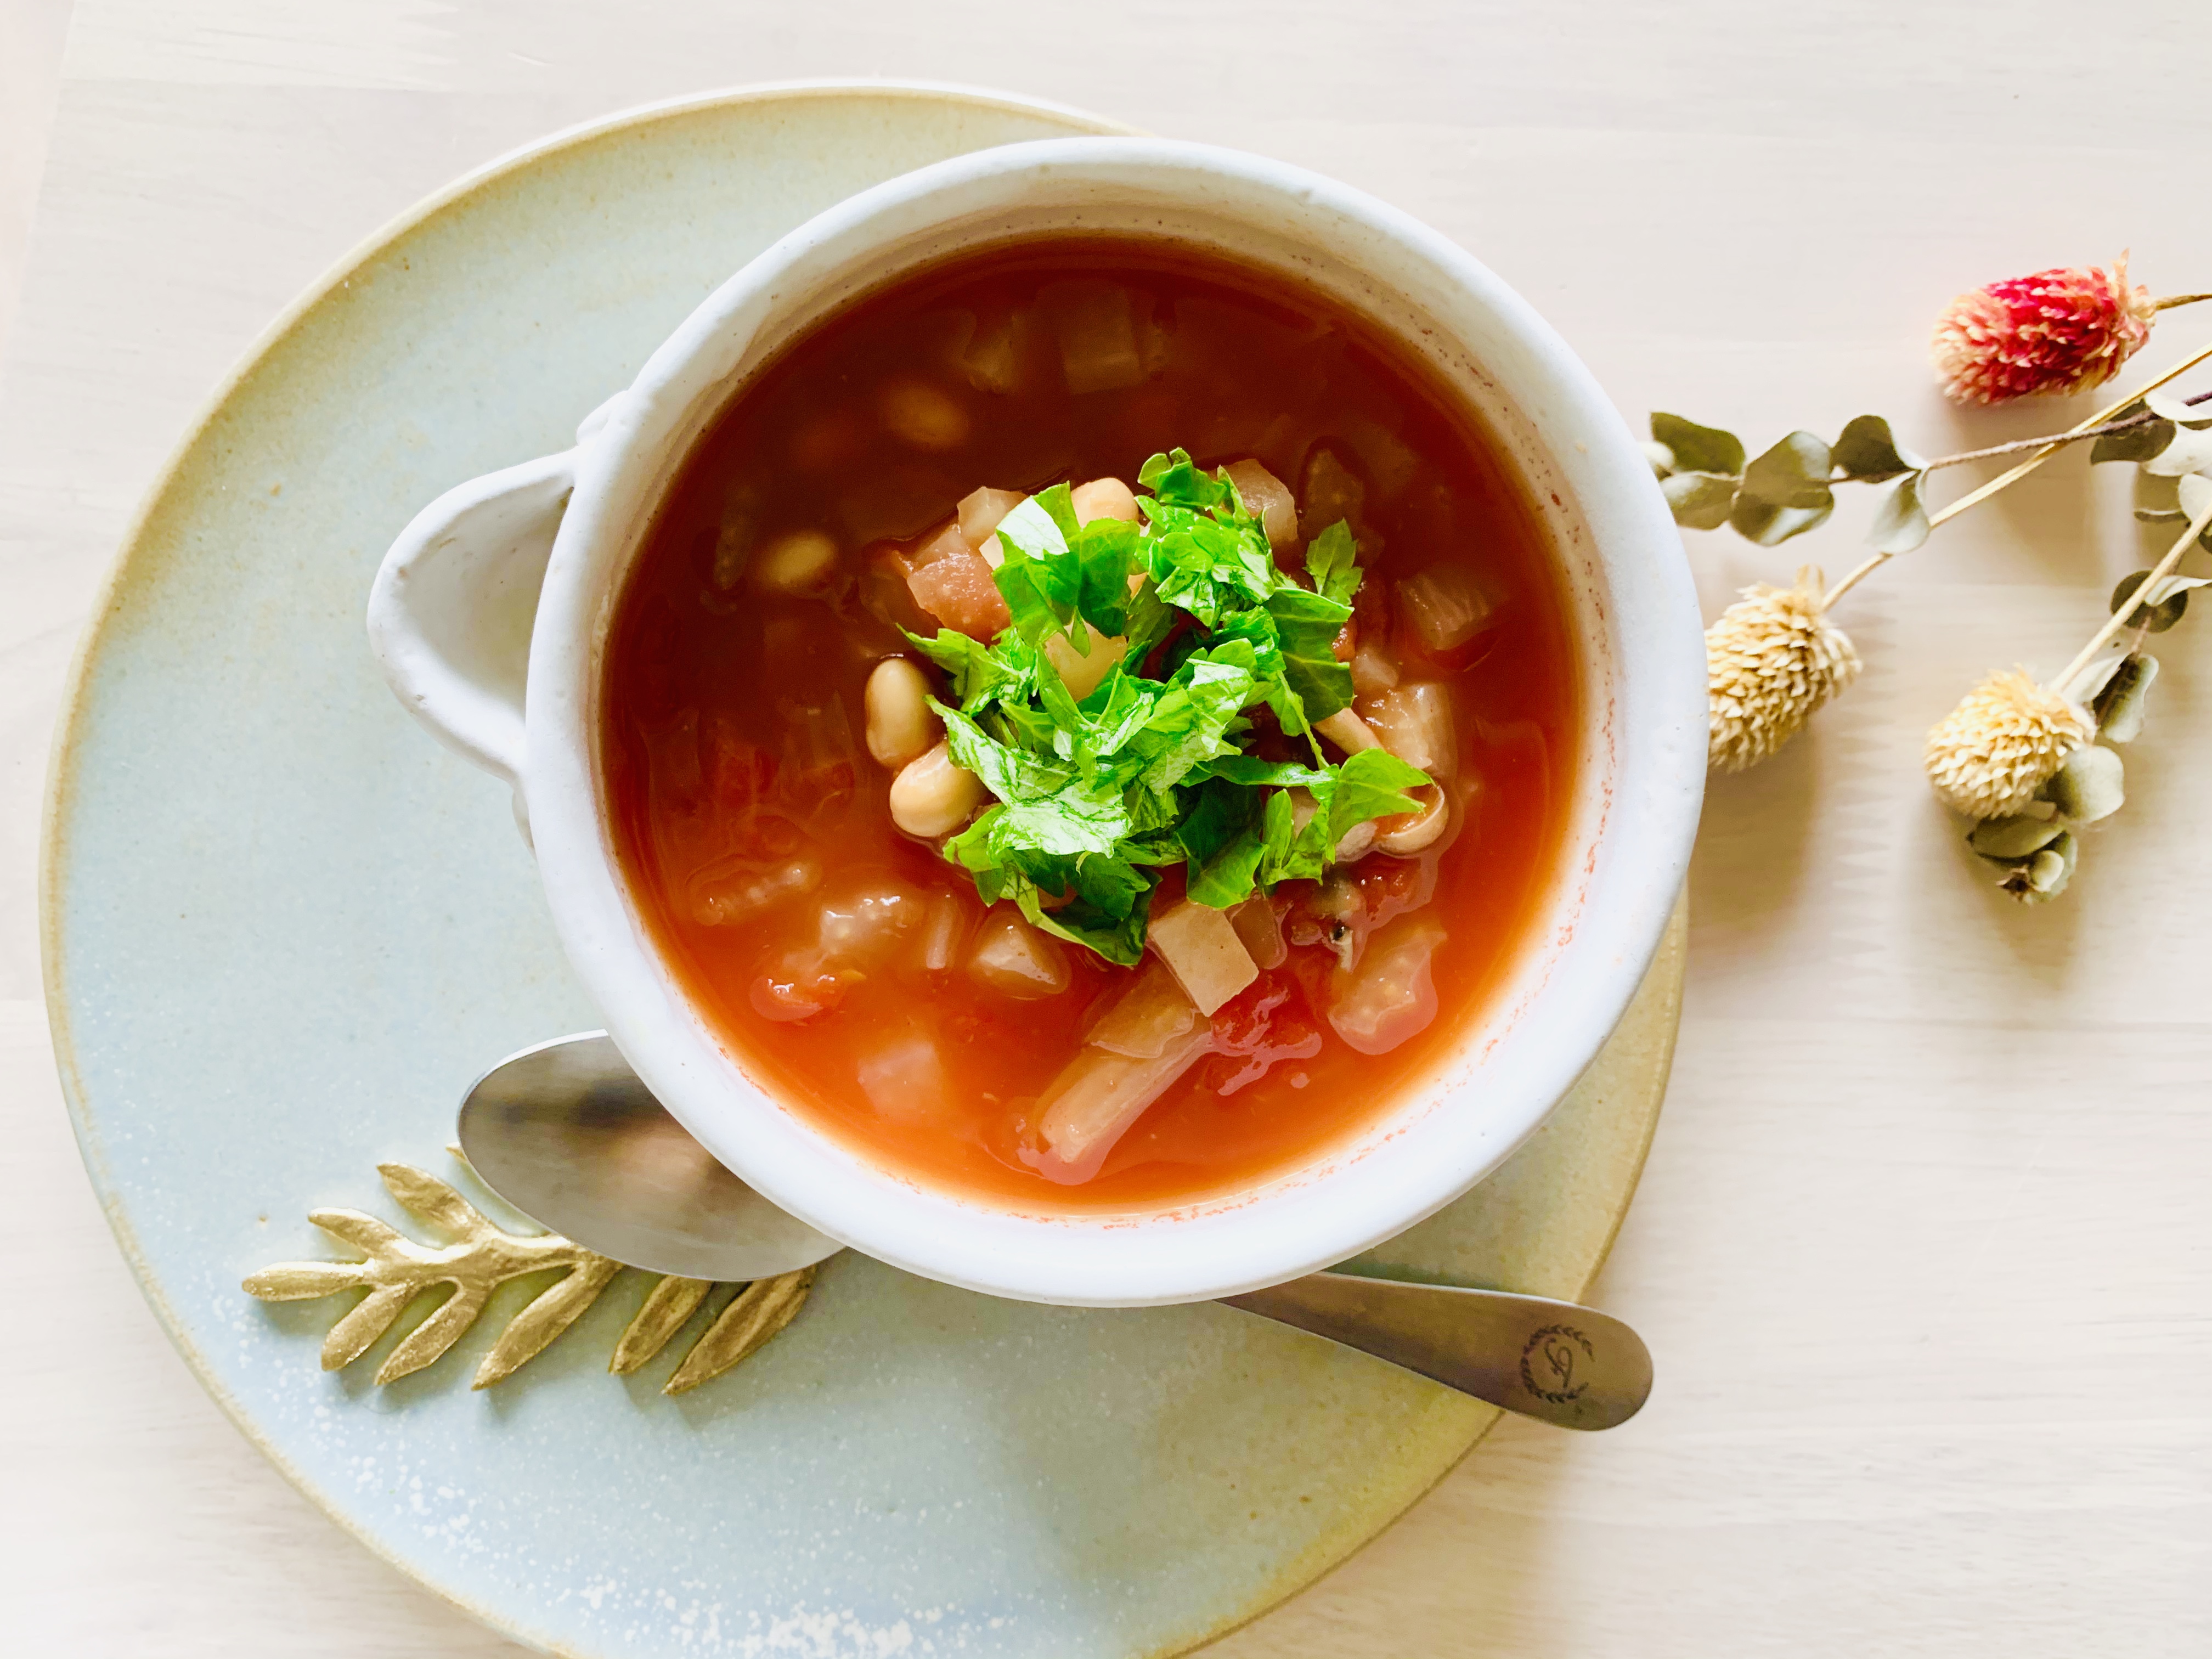 食欲の暴走を薬膳スープでストップ 簡単トマト缶スープ 記事詳細 Infoseekニュース